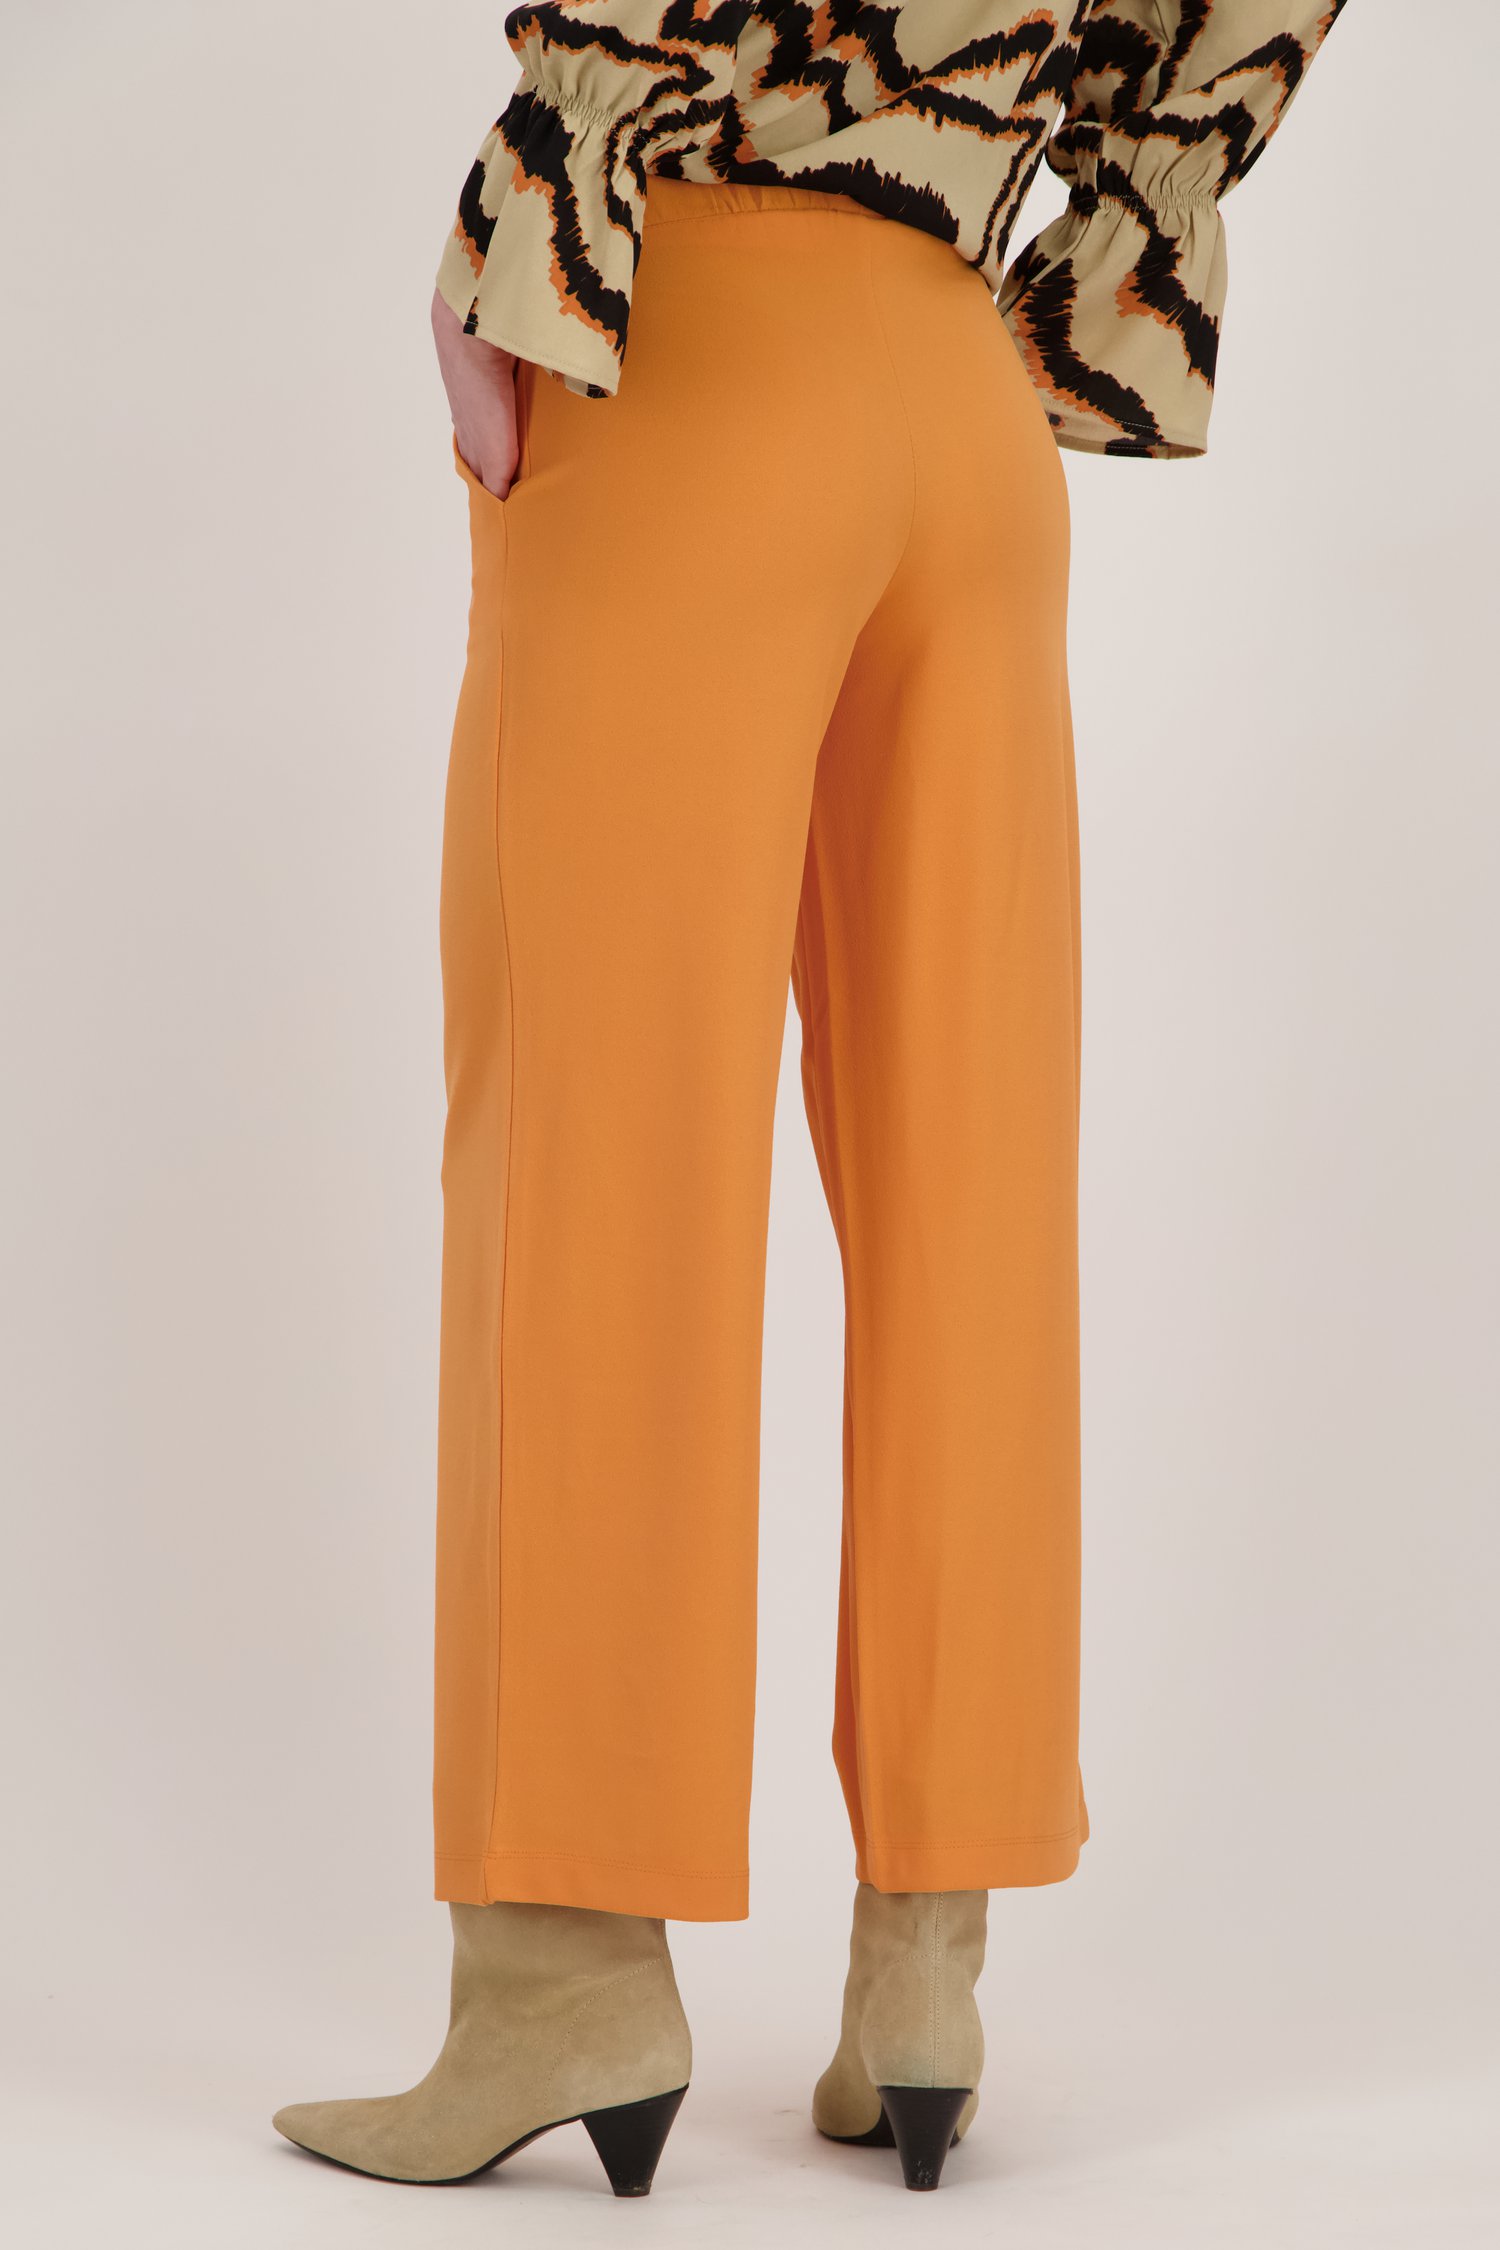 Culotte orange de JDY pour Femmes